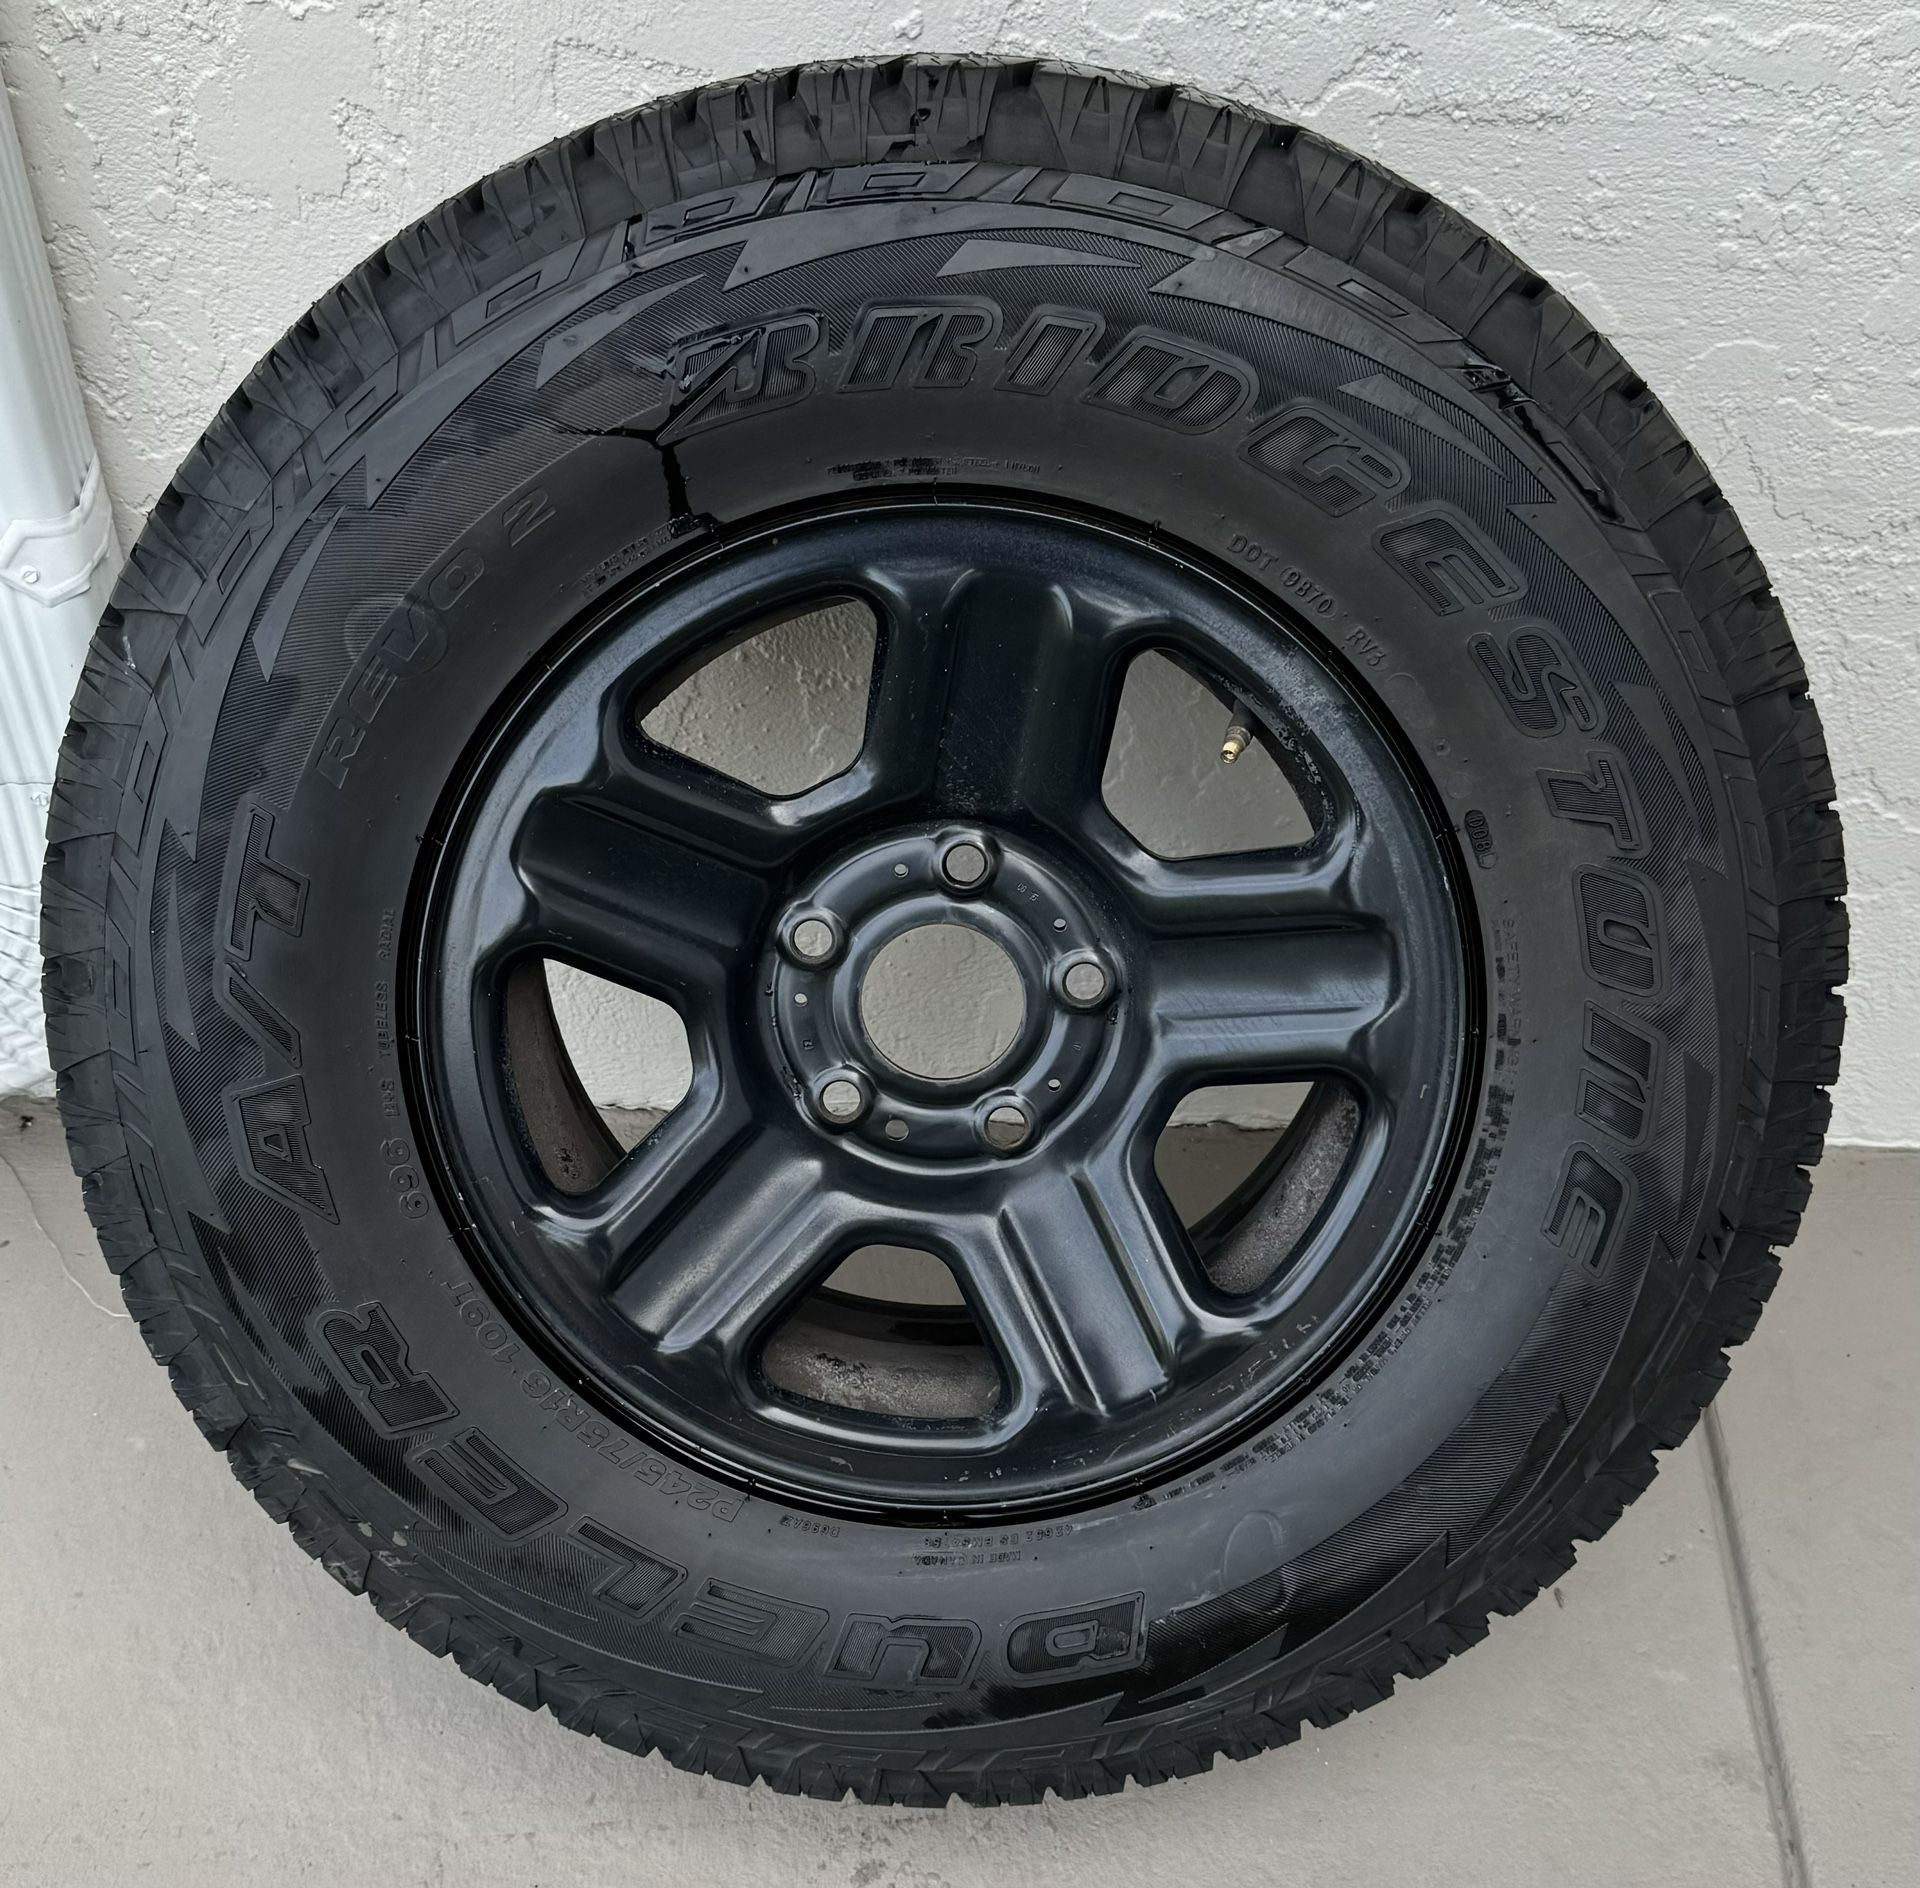 Bridgestone Tire/wheel